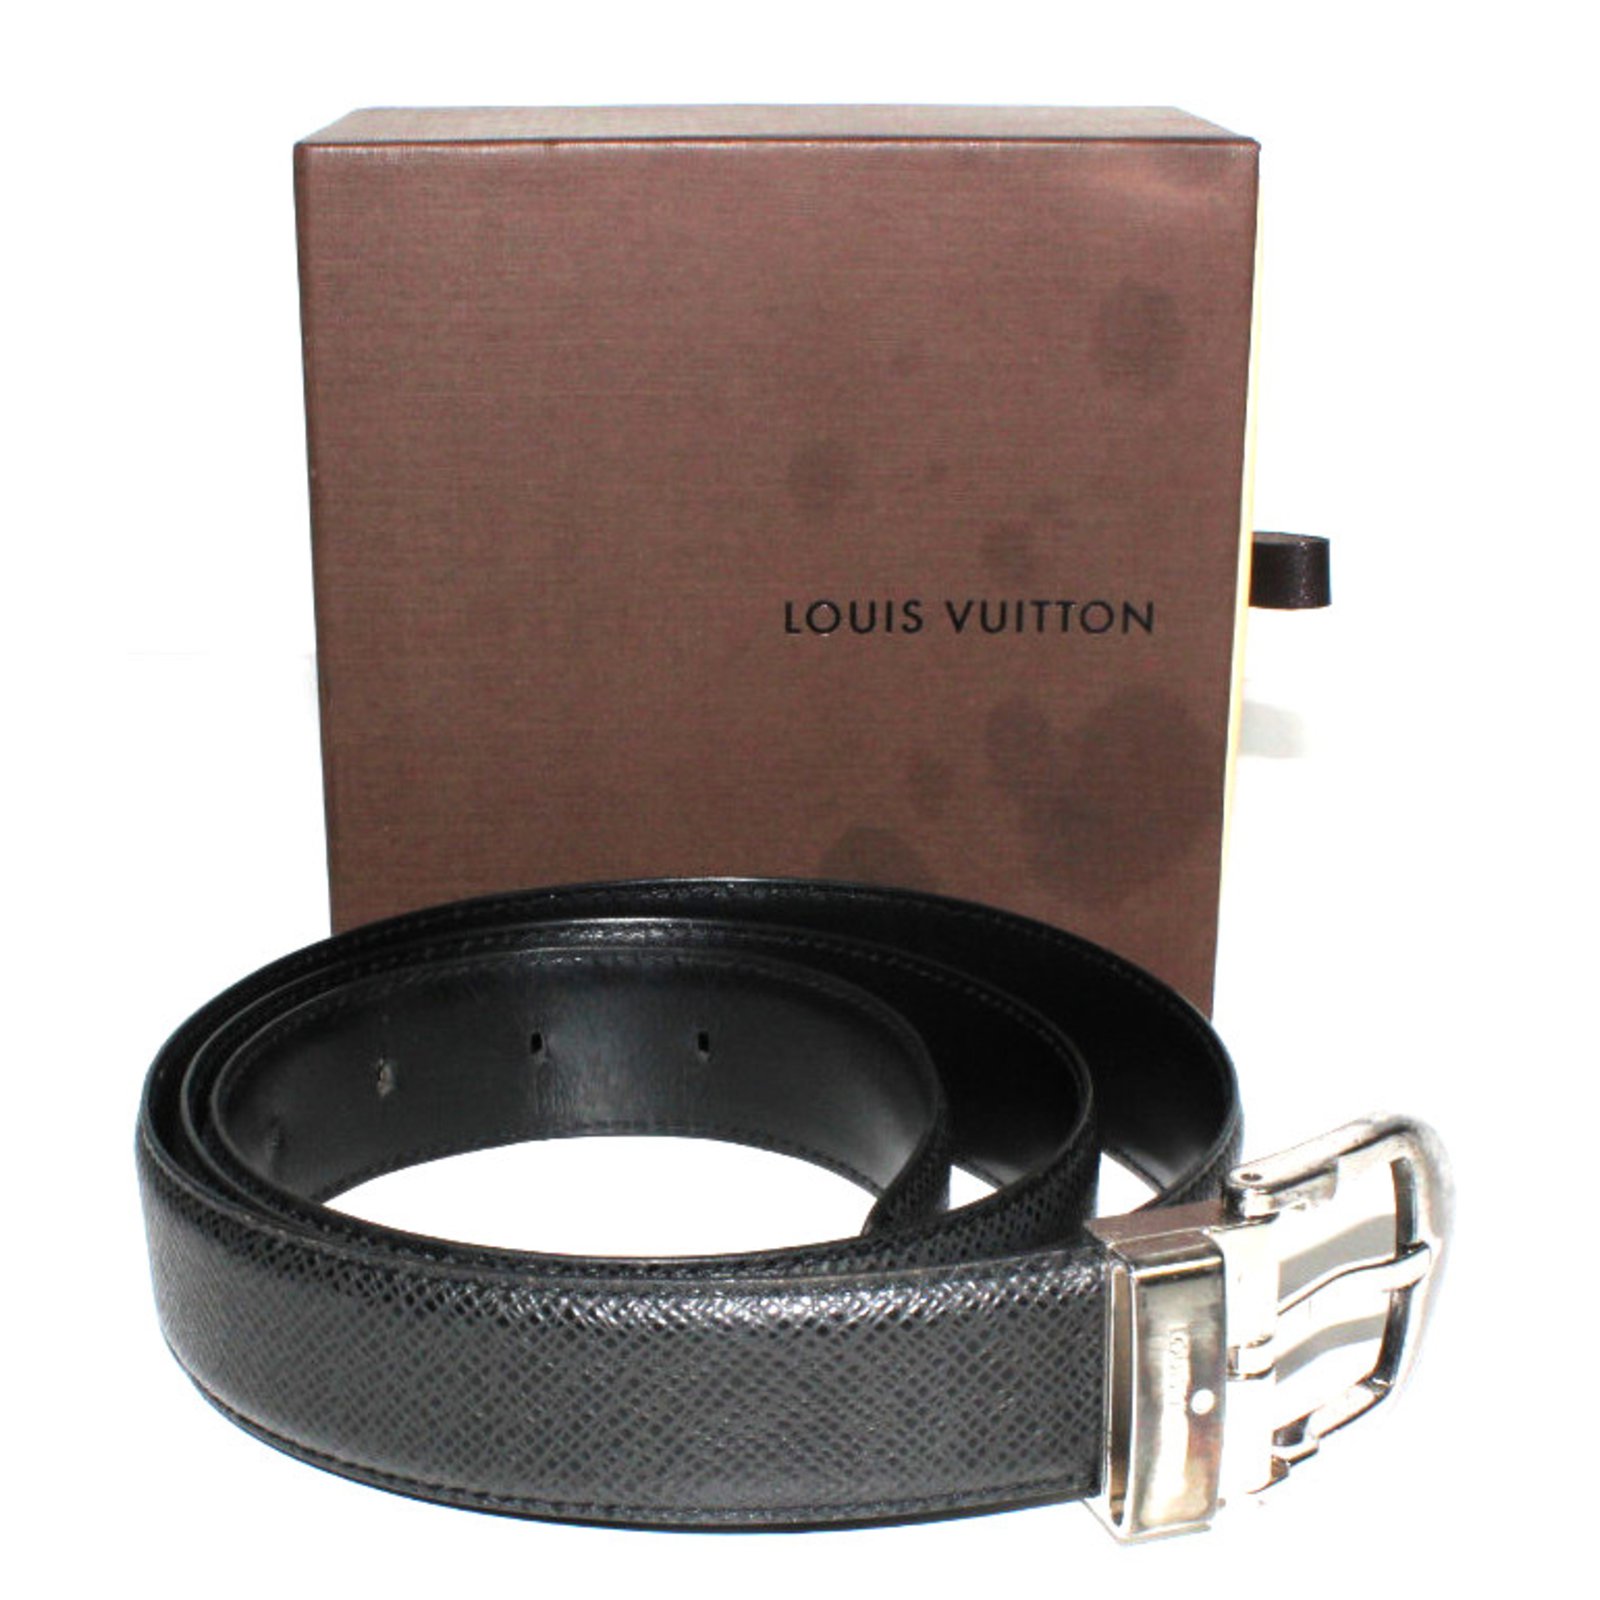 LOUIS VUITTON - Cinturón de cuero negro con hebilla de o…